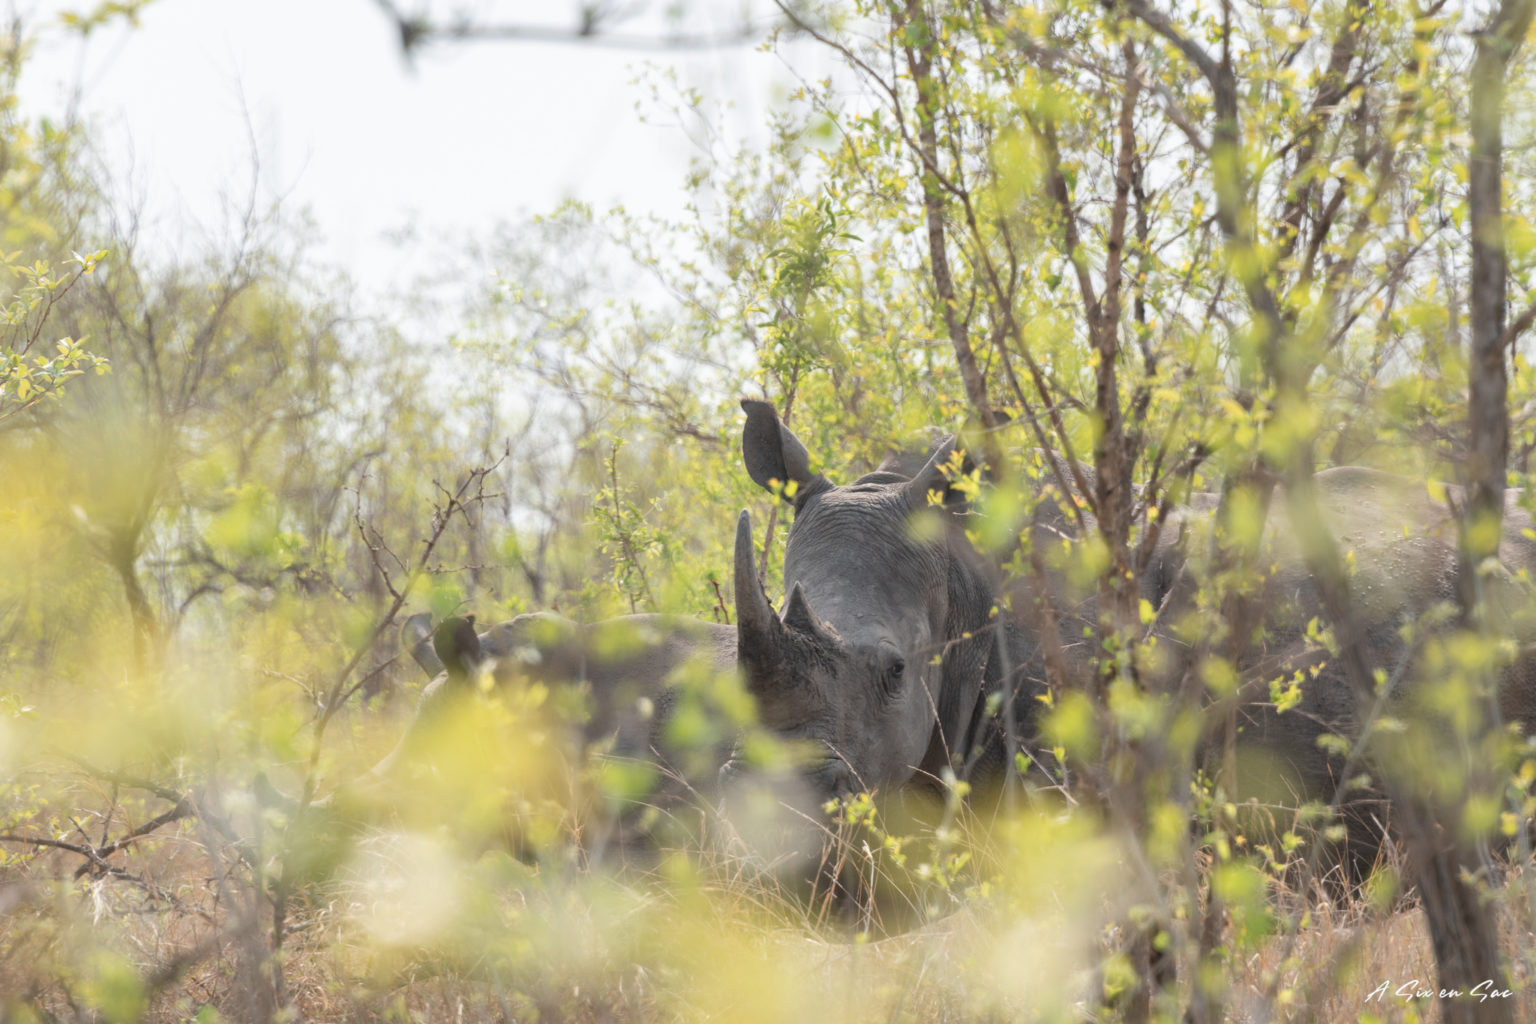 le premier rhinocéros aperçu lors de notre safari en autonome dans la portion sud de parc Kruger